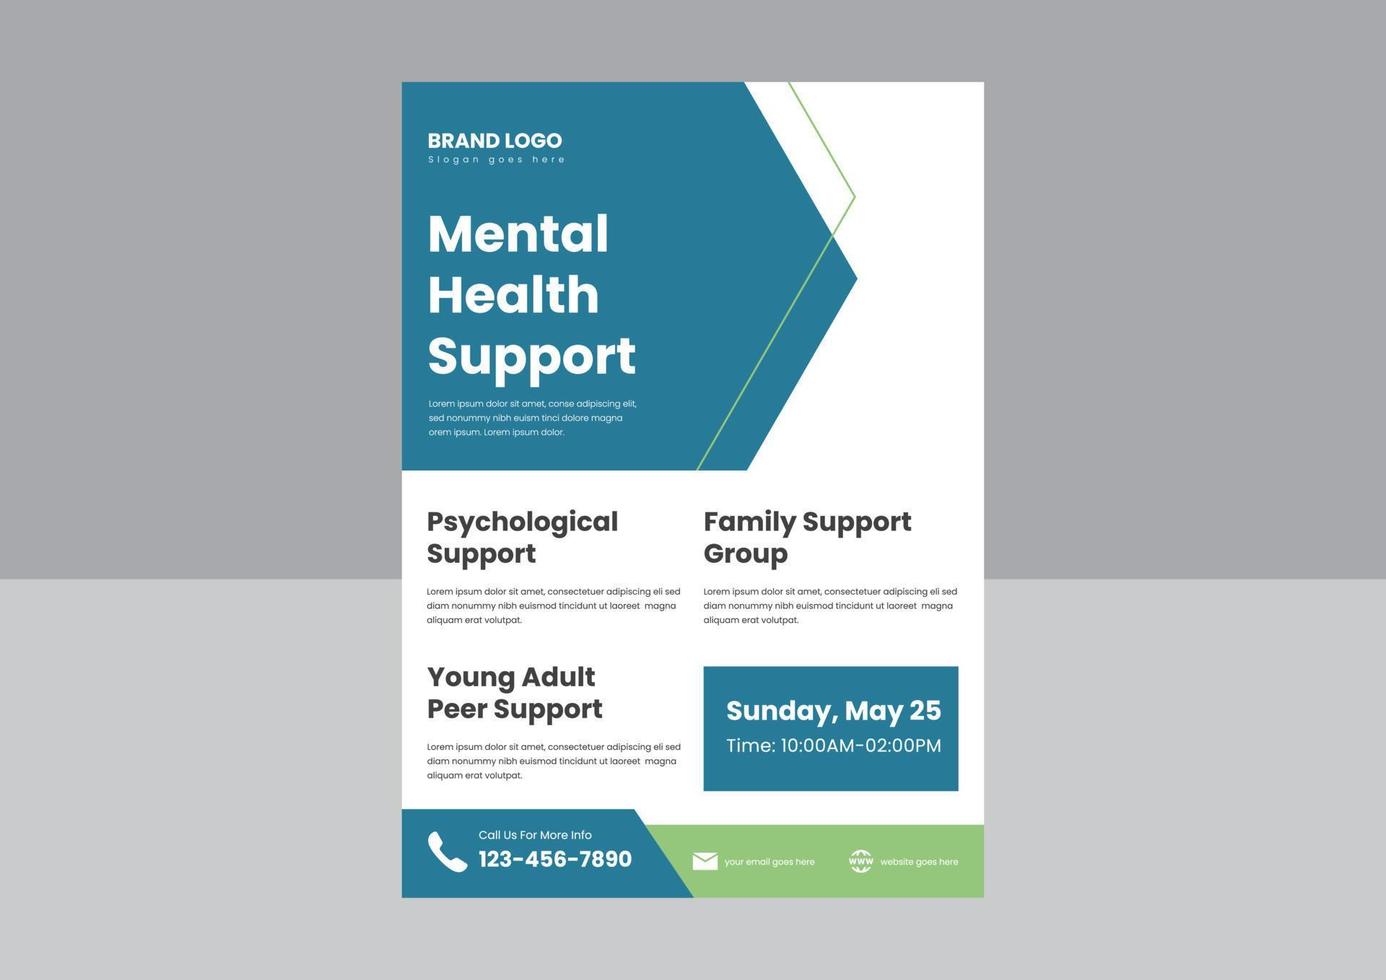 Flyer-Poster-Designvorlage für mentale Unterstützung. Kümmern Sie sich um Ihre Flyer-Poster-Designvorlage für psychische Gesundheit. vektor